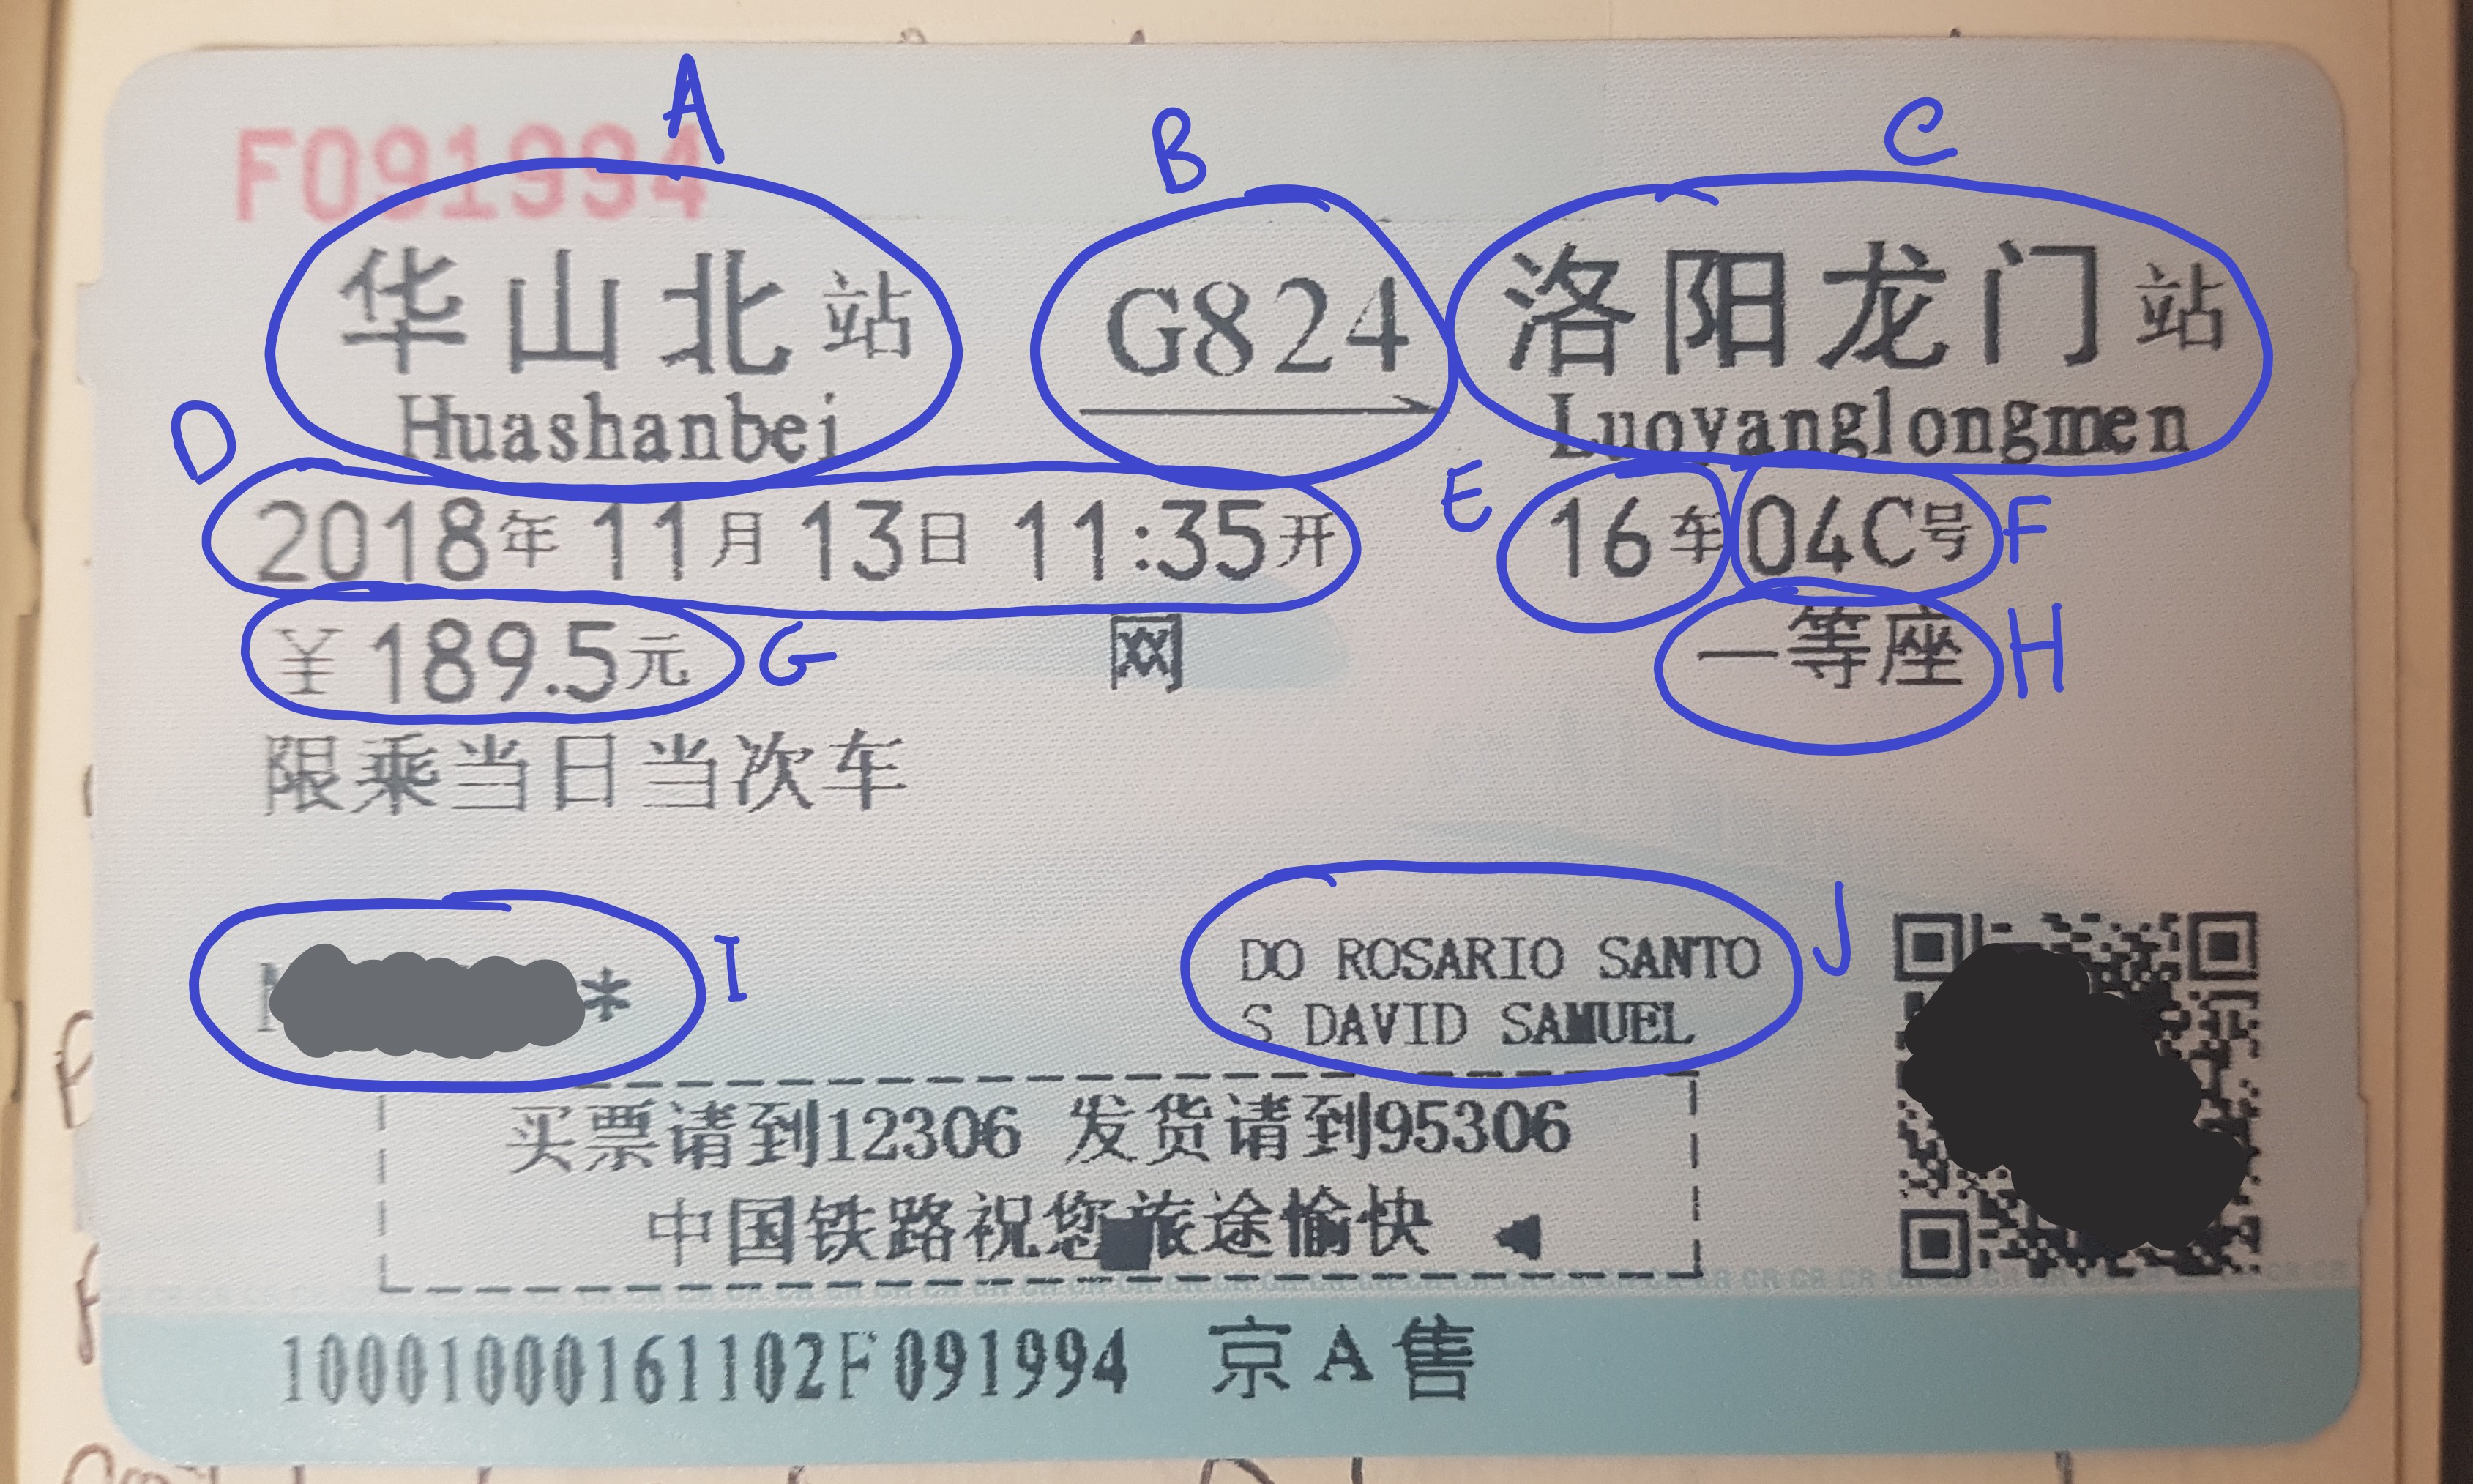 Bilhete de 1ª classe para comboio de alta velocidade na China